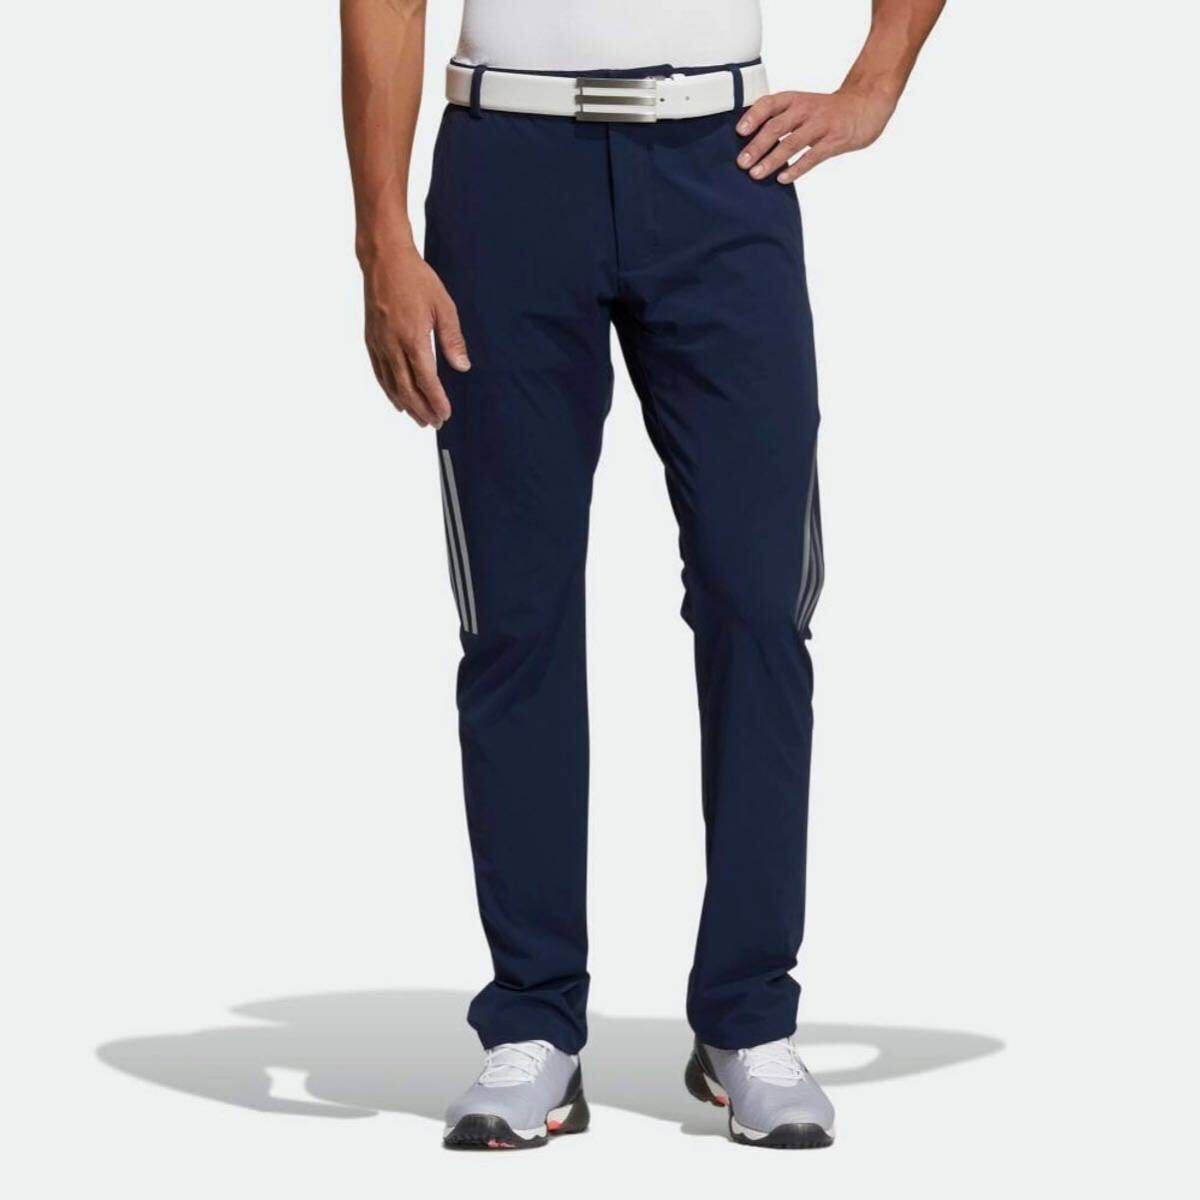 76cm новый товар 13200 иен / Adidas adidas Golf боковой si-m отсутствует брюки / стрейч длинные брюки / Golf брюки / темно-синий / темно-синий 